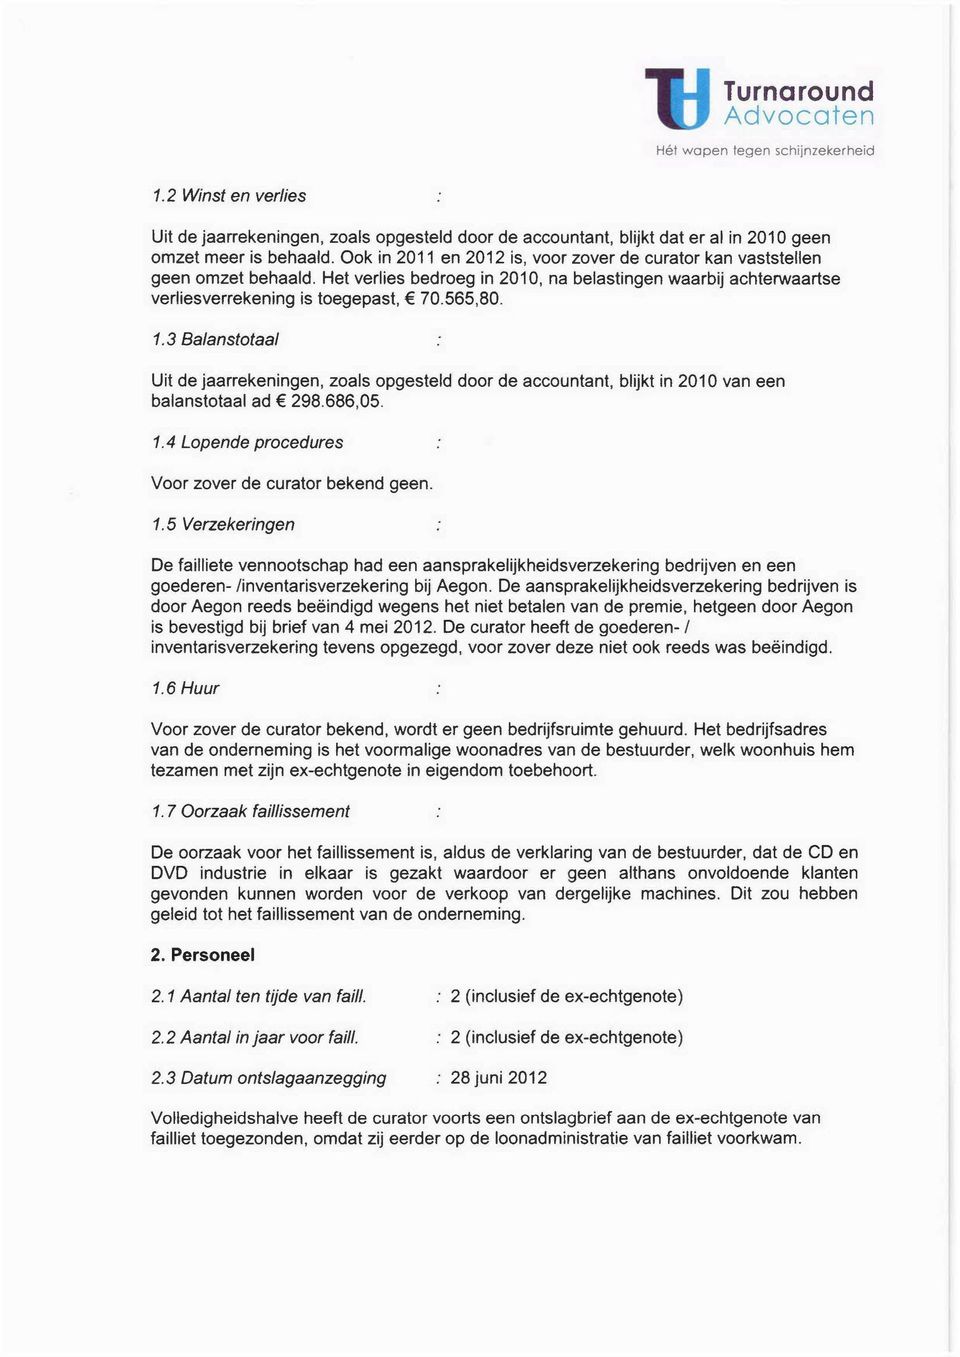 3 Balanstotaal Uit de jaarrekeningen, zoals opgesteld door de accountant, blijkt in 2010 van een balanstotaal ad 298.686,05. 1.